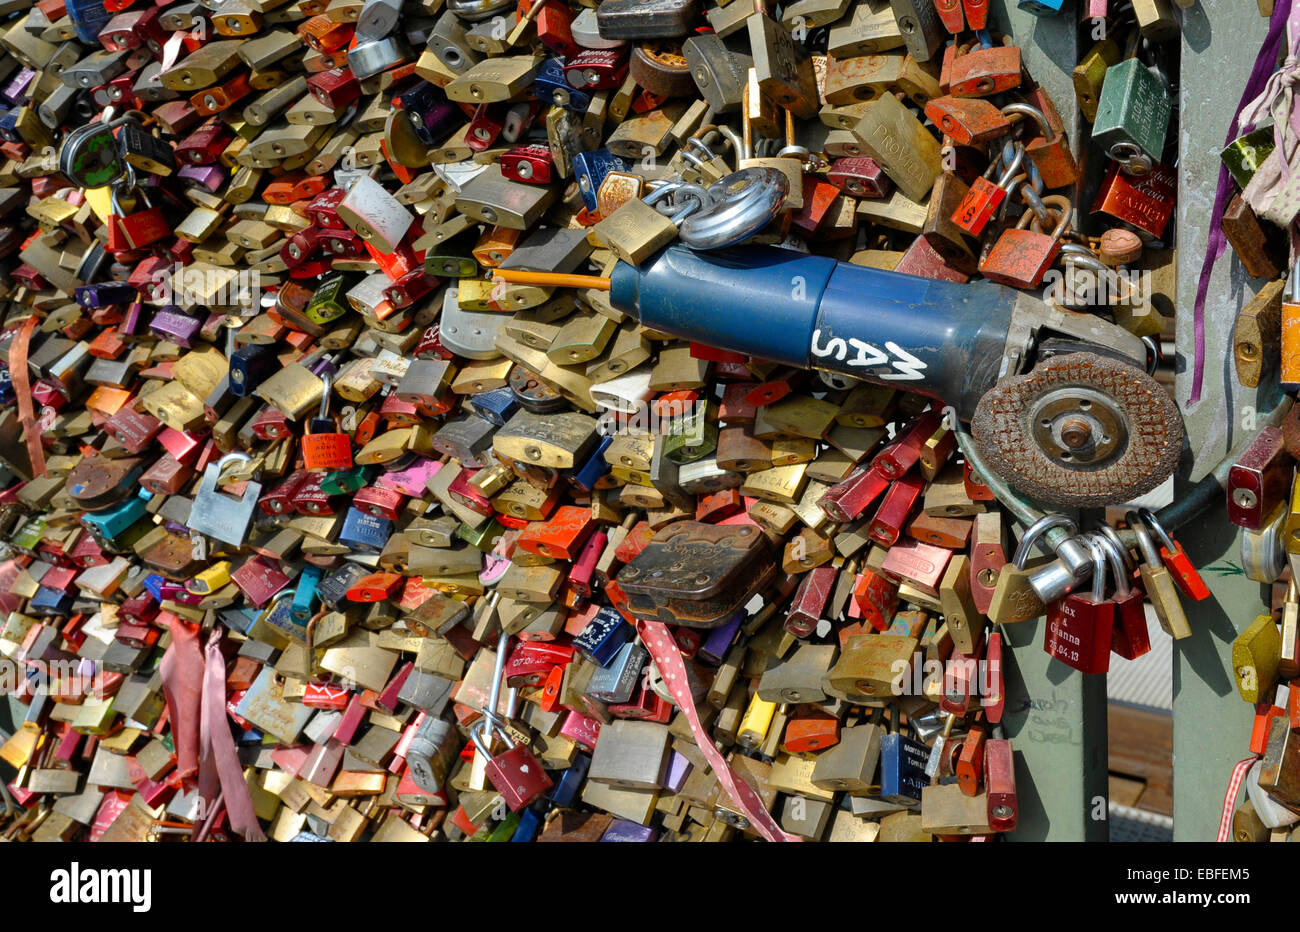 Meuleuse d'angle et d'amour se bloque sur la rambarde du pont Hohenzollern à Cologne, NRW, Allemagne Banque D'Images